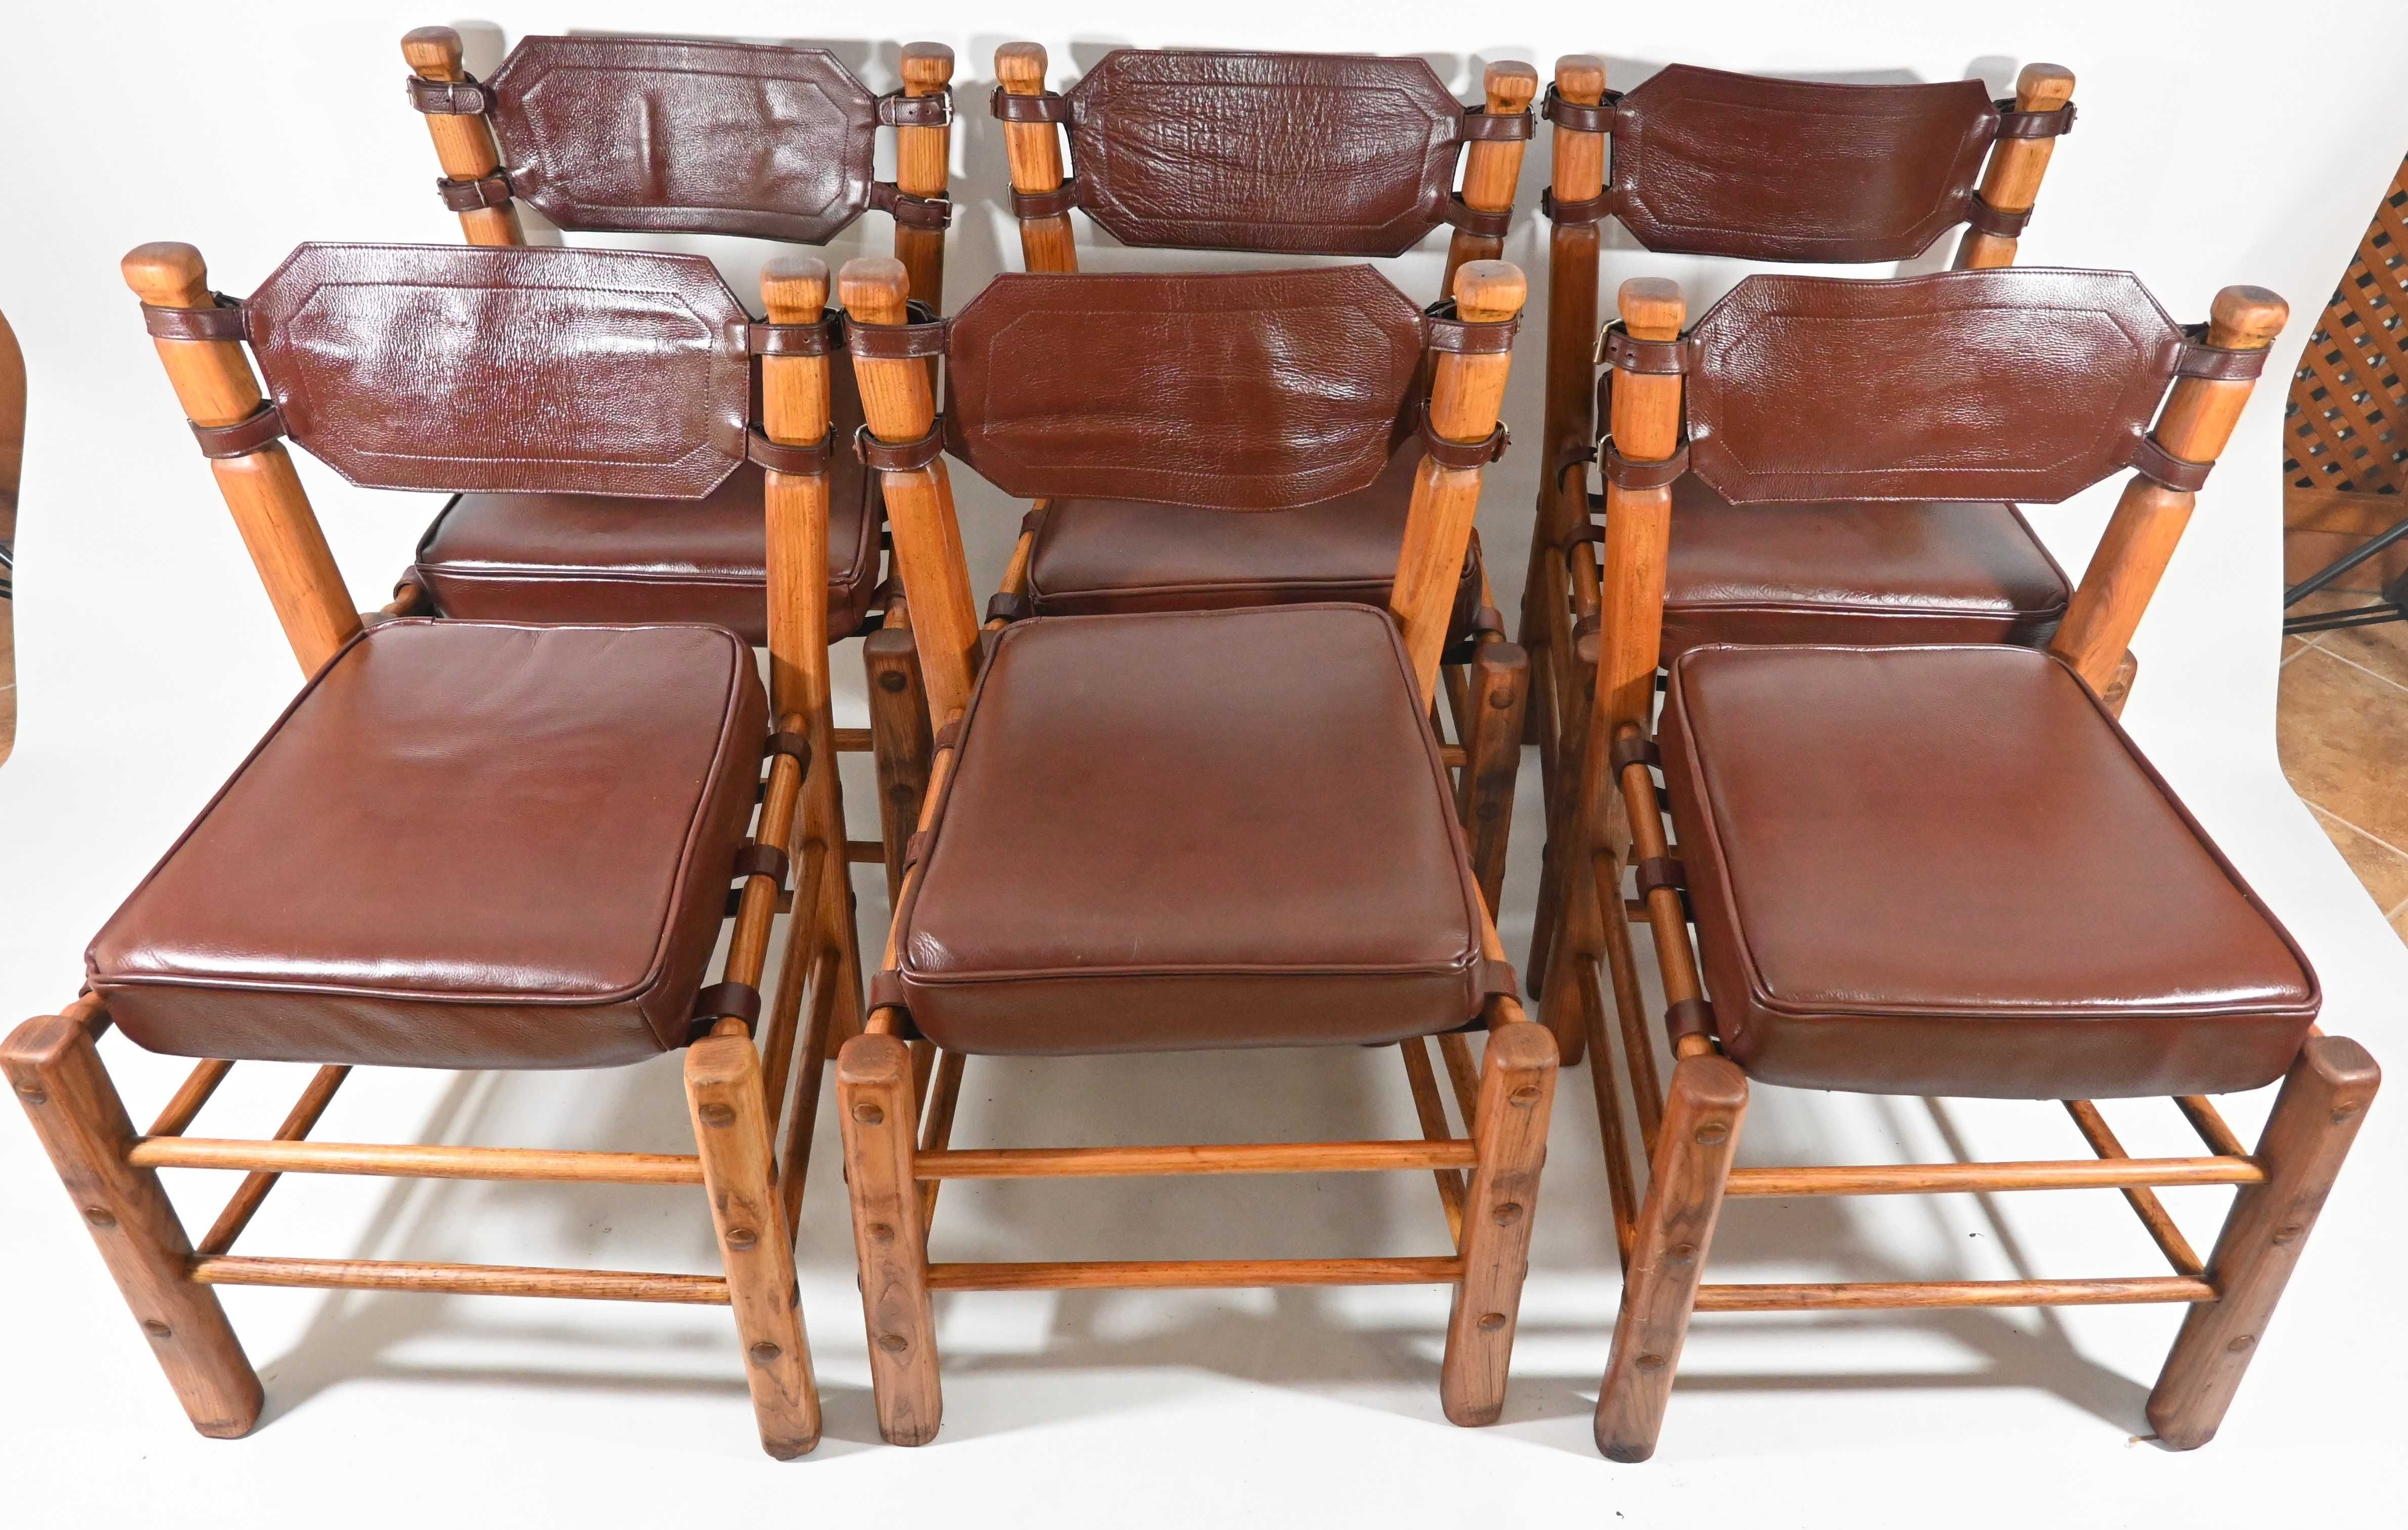 Krzesła tekowe teak safari boho vintage lata 60/70 skórzane skóra